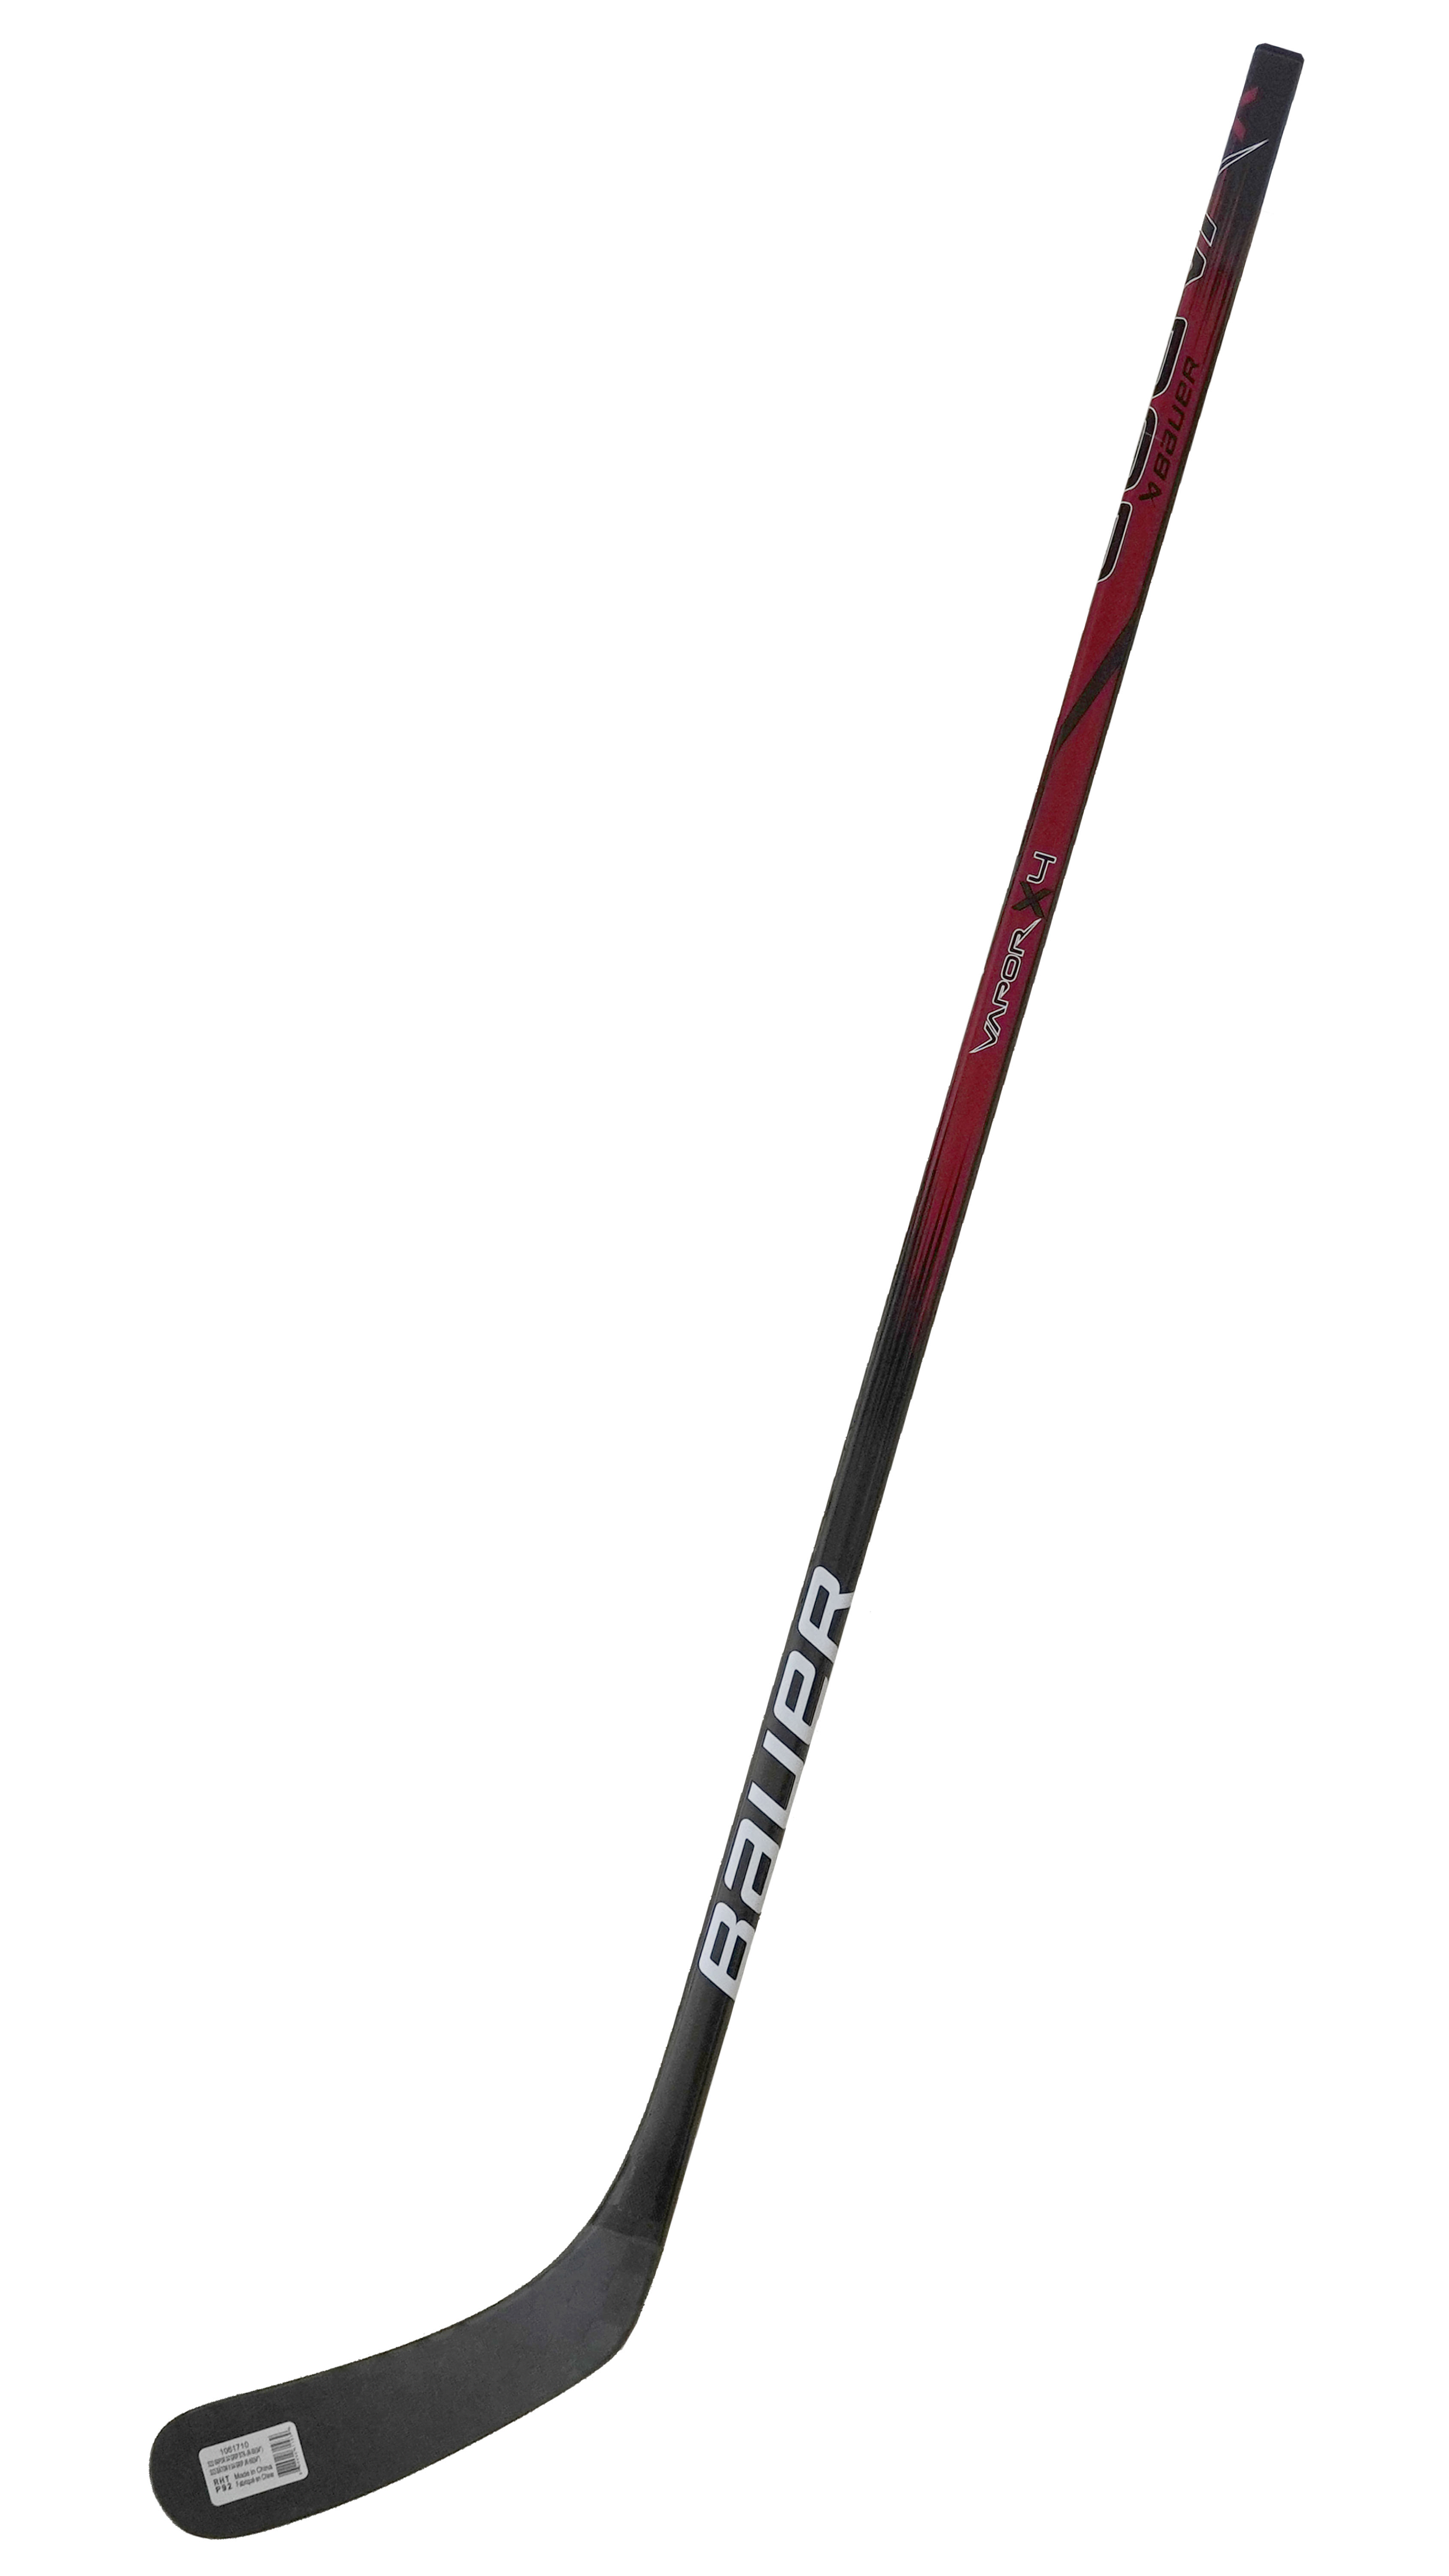 Клюшка хоккейная BAUER Vapor X4 STK S23 SR Grip 1061705 (87 P28 L)